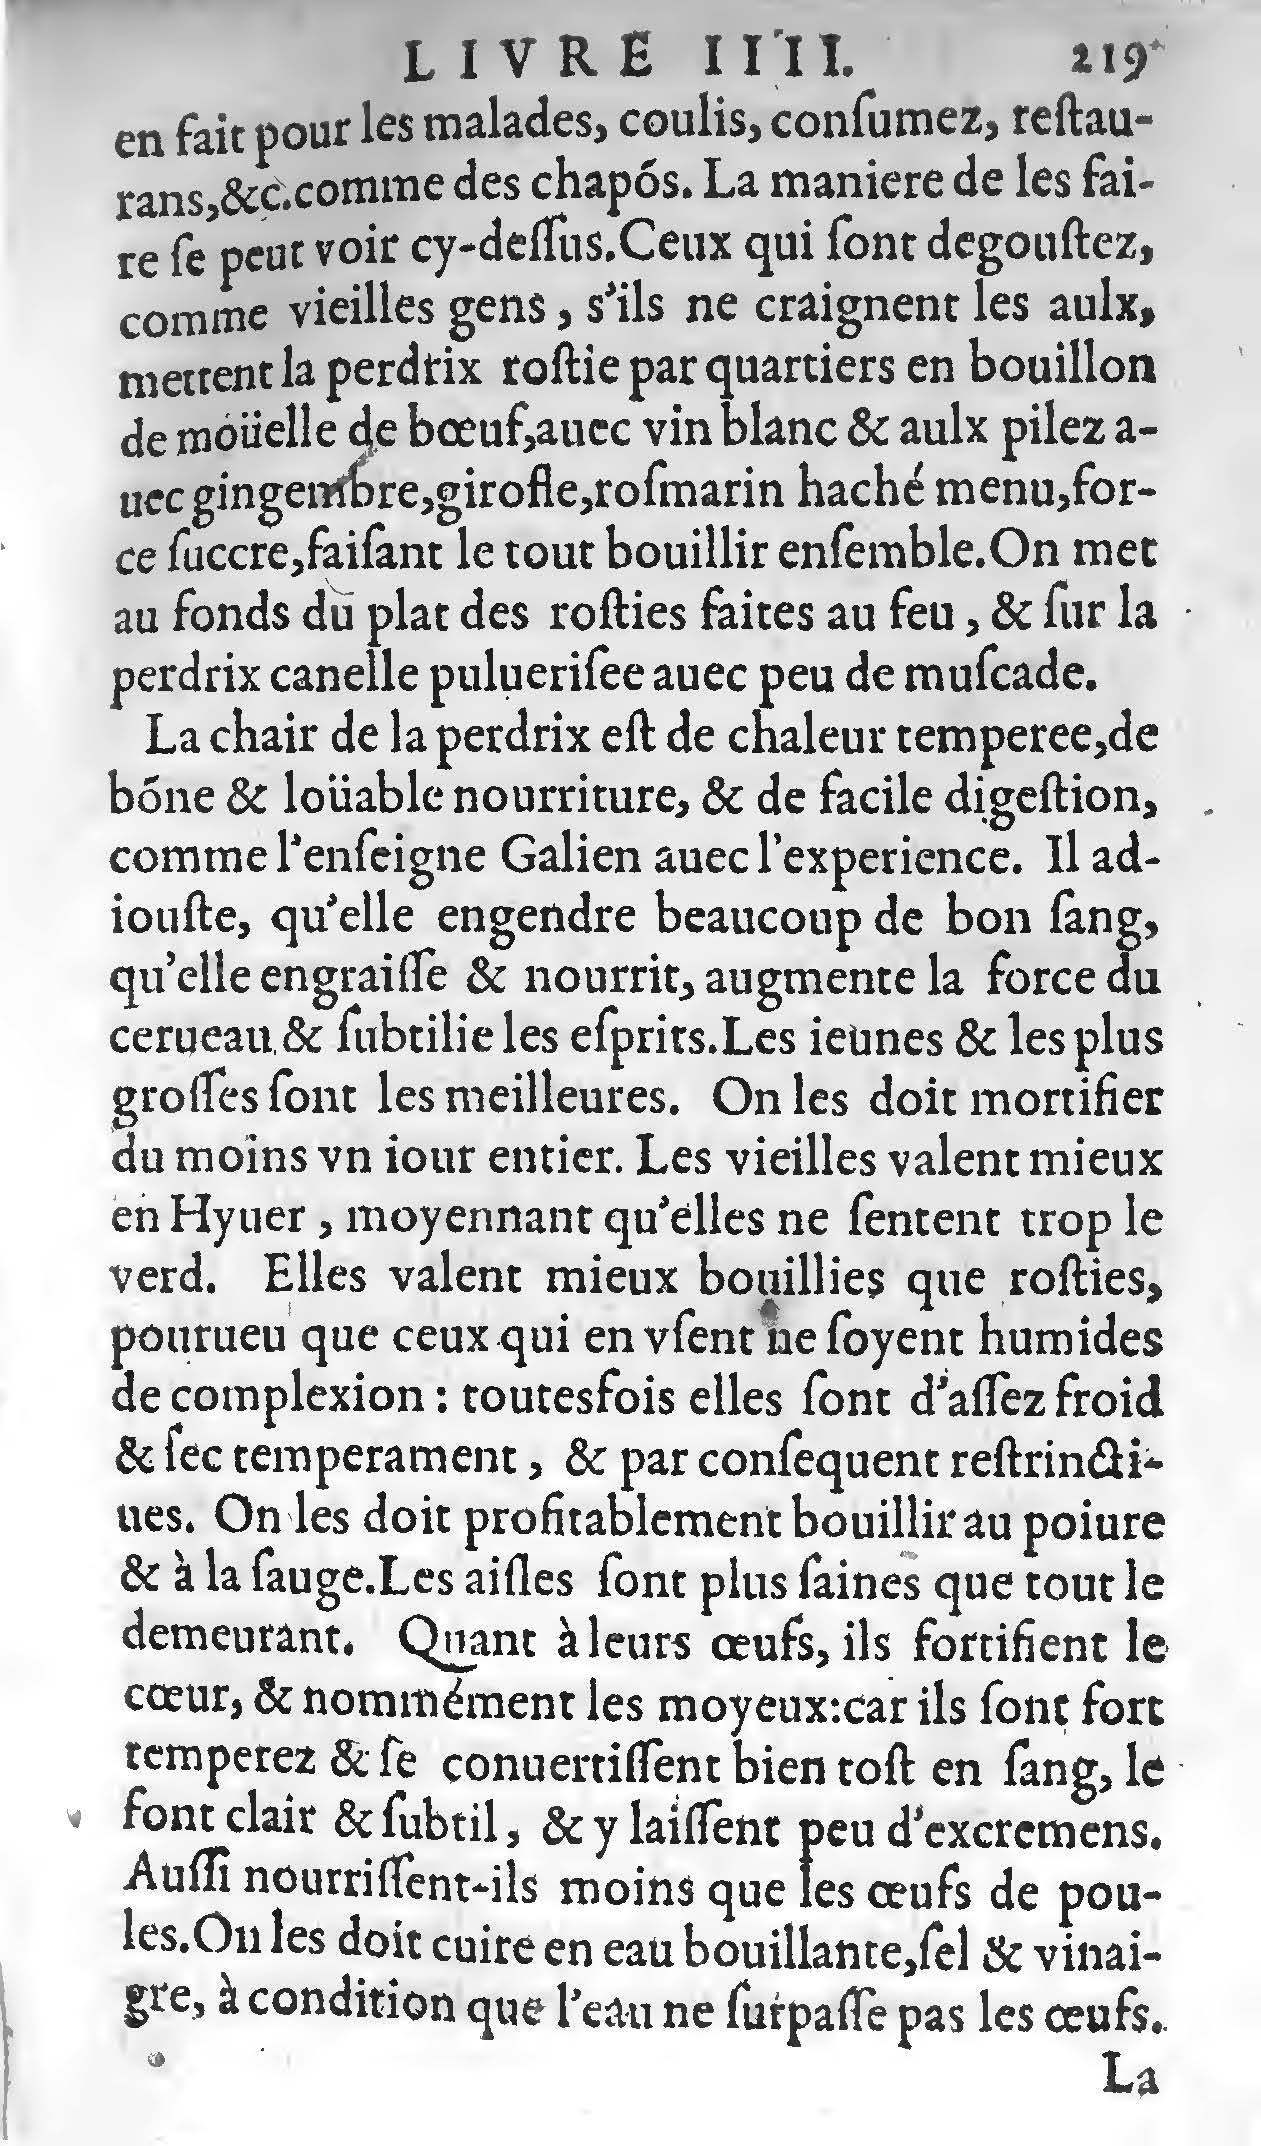 1607 Étienne Servain et Jean Antoine Huguetan - Trésor de santé ou ménage de la vie humaine - BIU Santé_Page_239.jpg